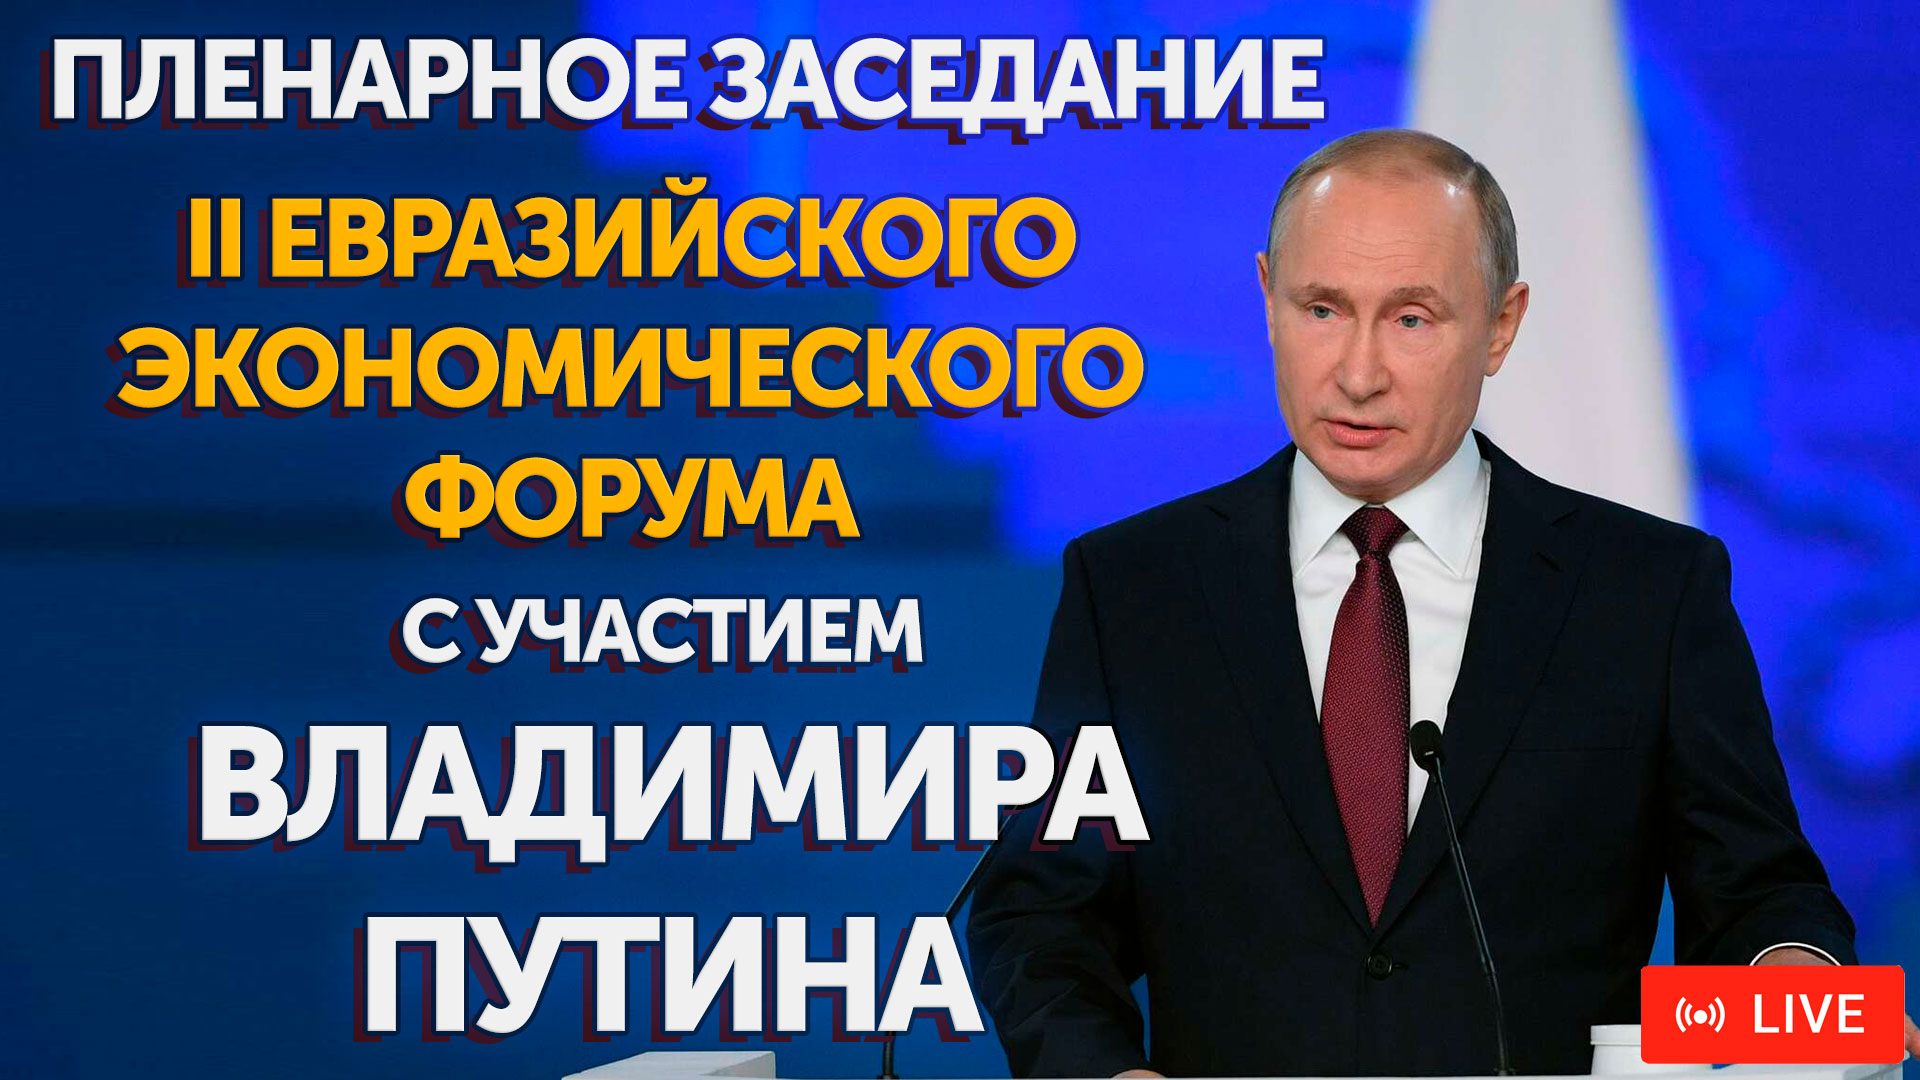 Смотрите на "БелРос" прямую трансляцию заседания II Евразийского экономического форума с участием Владимира Путина